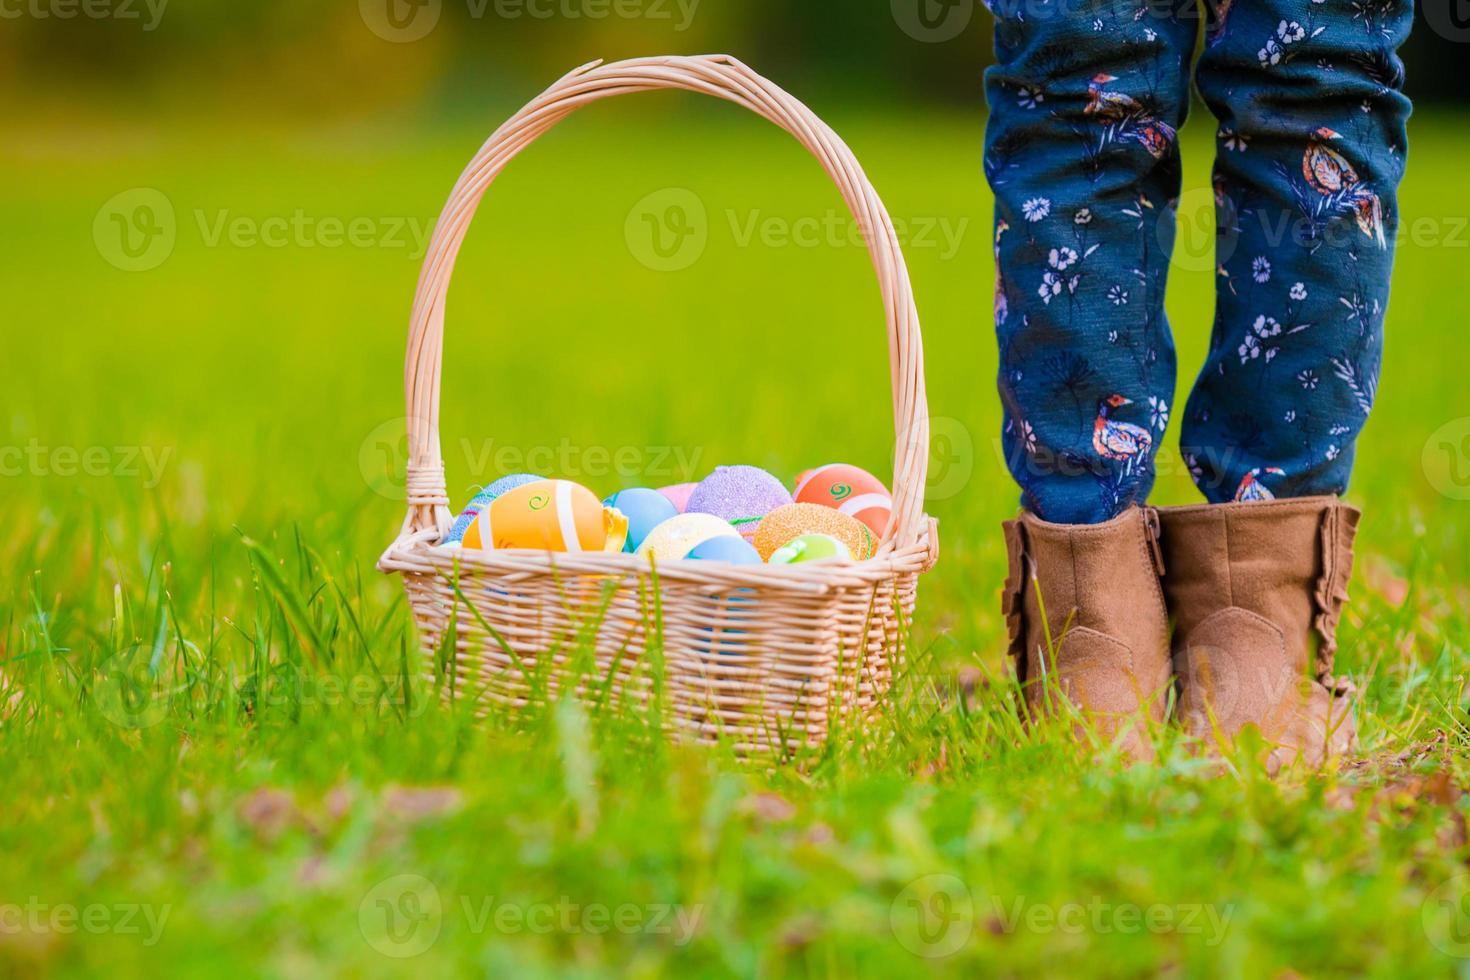 cerrar coloridos huevos de pascua en una canasta en la hierba foto